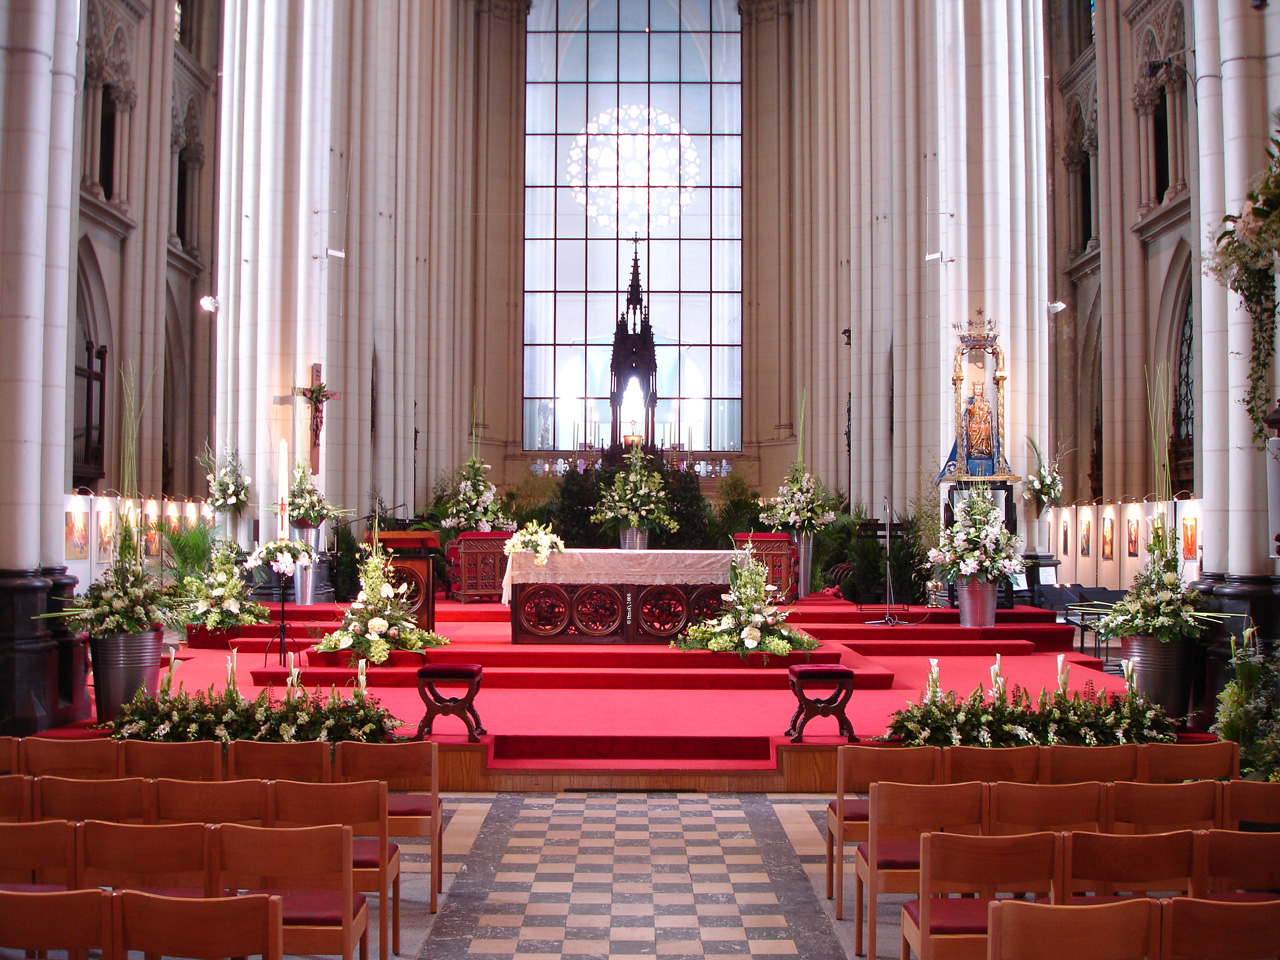 Eglise en Fleurs (dition 2008)